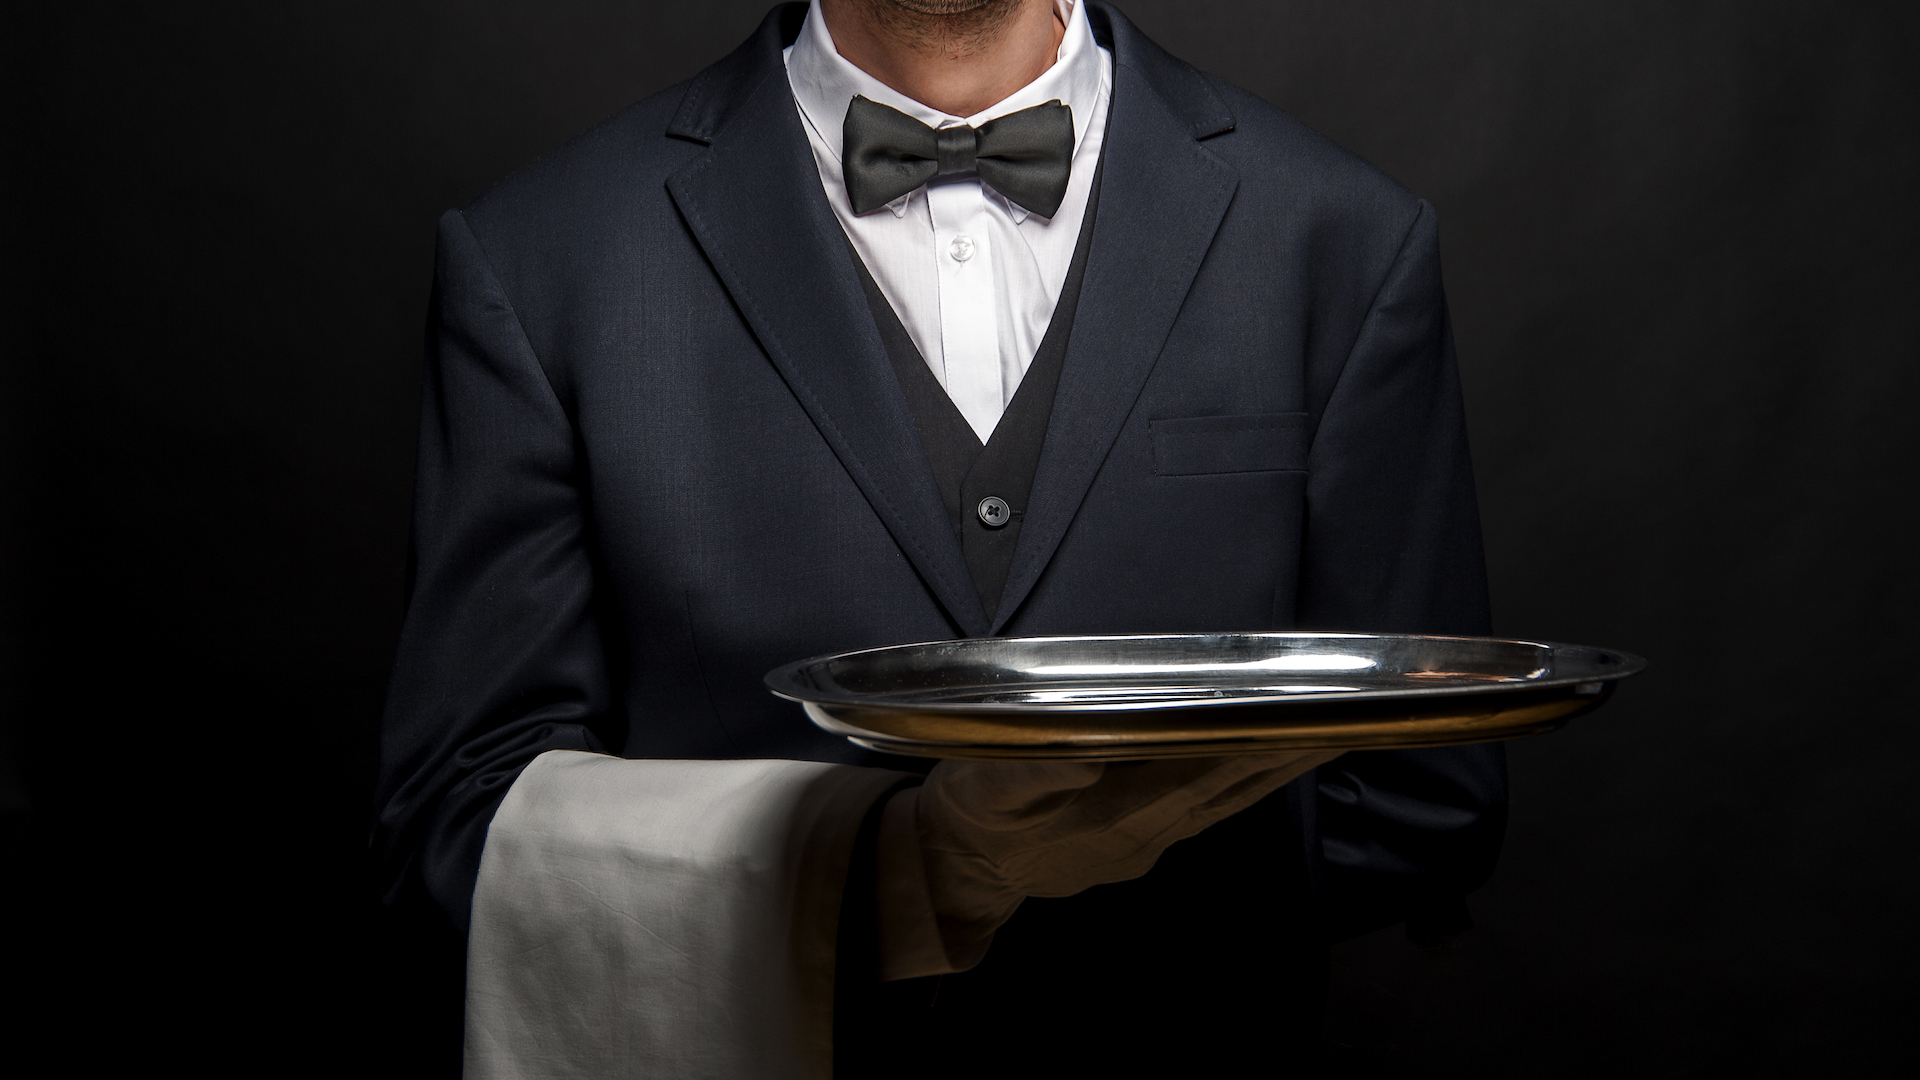 A butler holding a silver tray